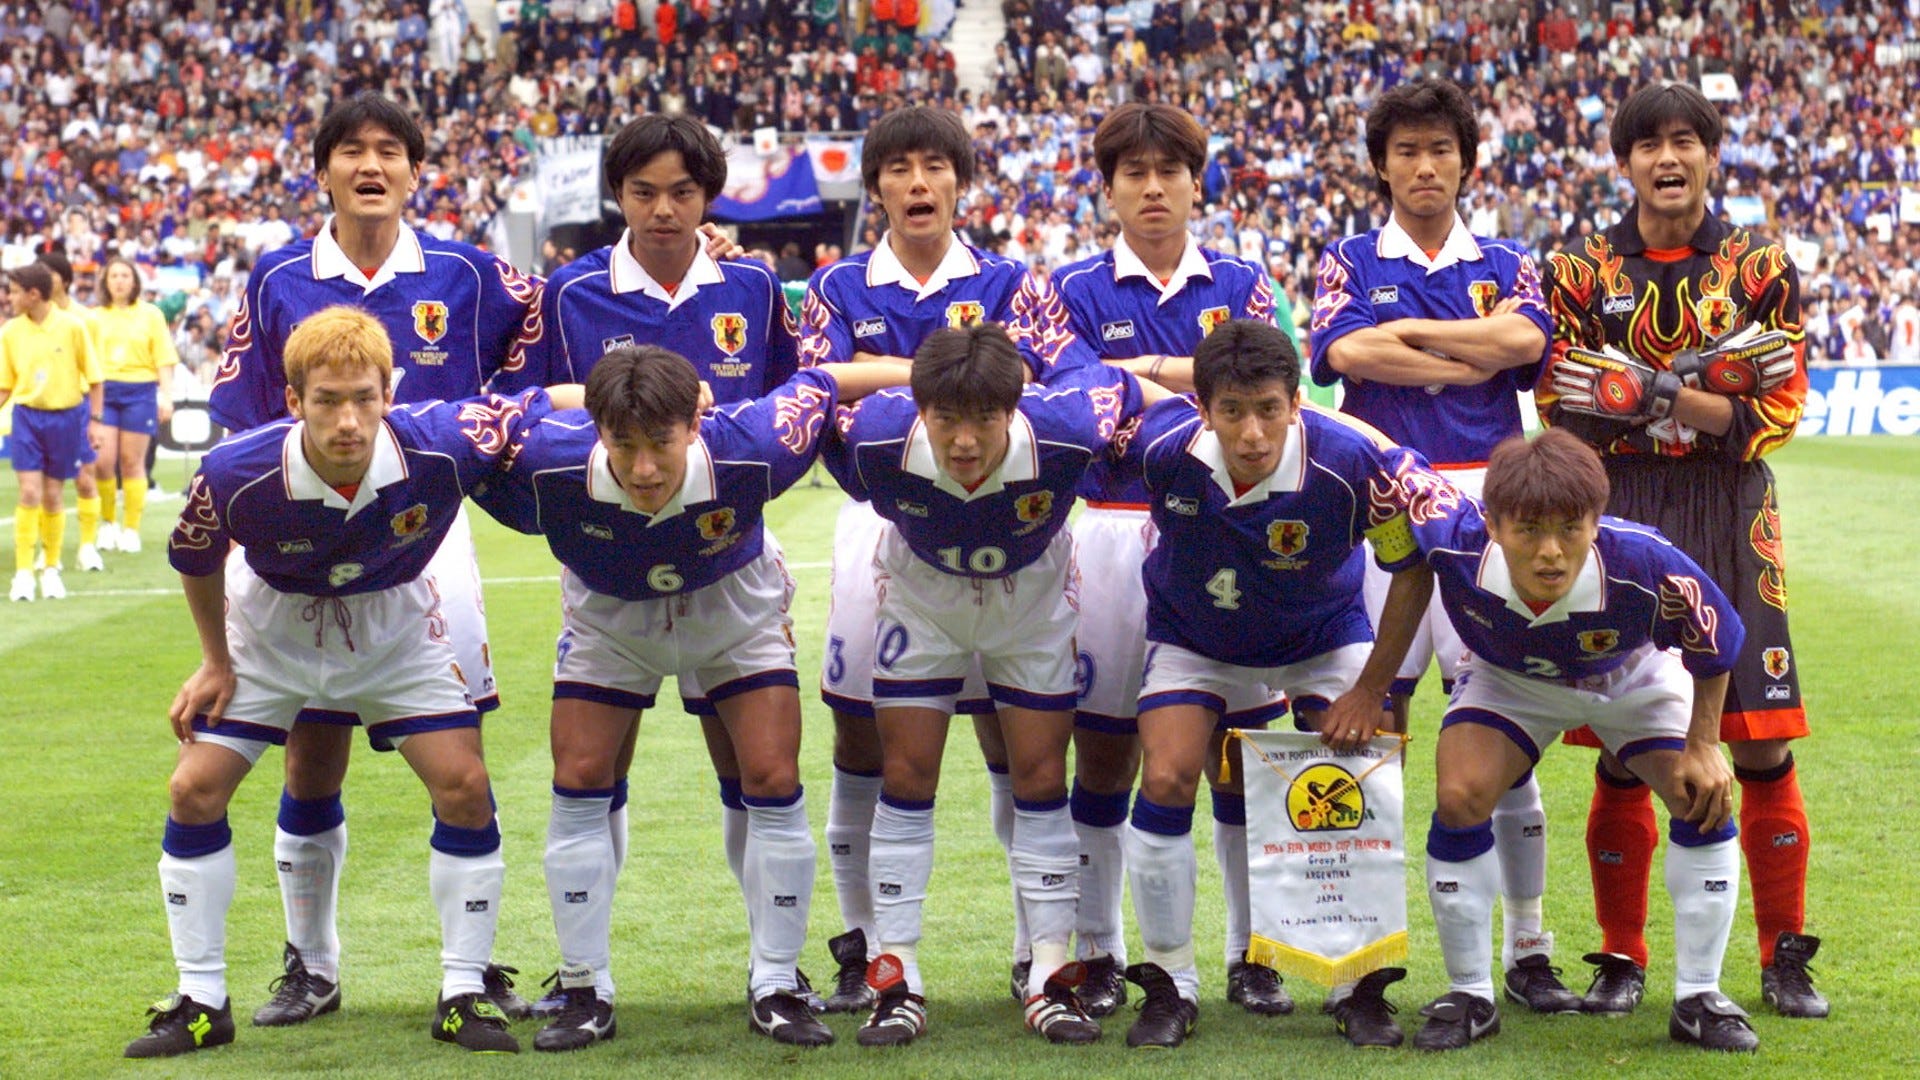 【激レア】日本代表 ユニフォーム 2002 日韓W杯モデル 背番号10